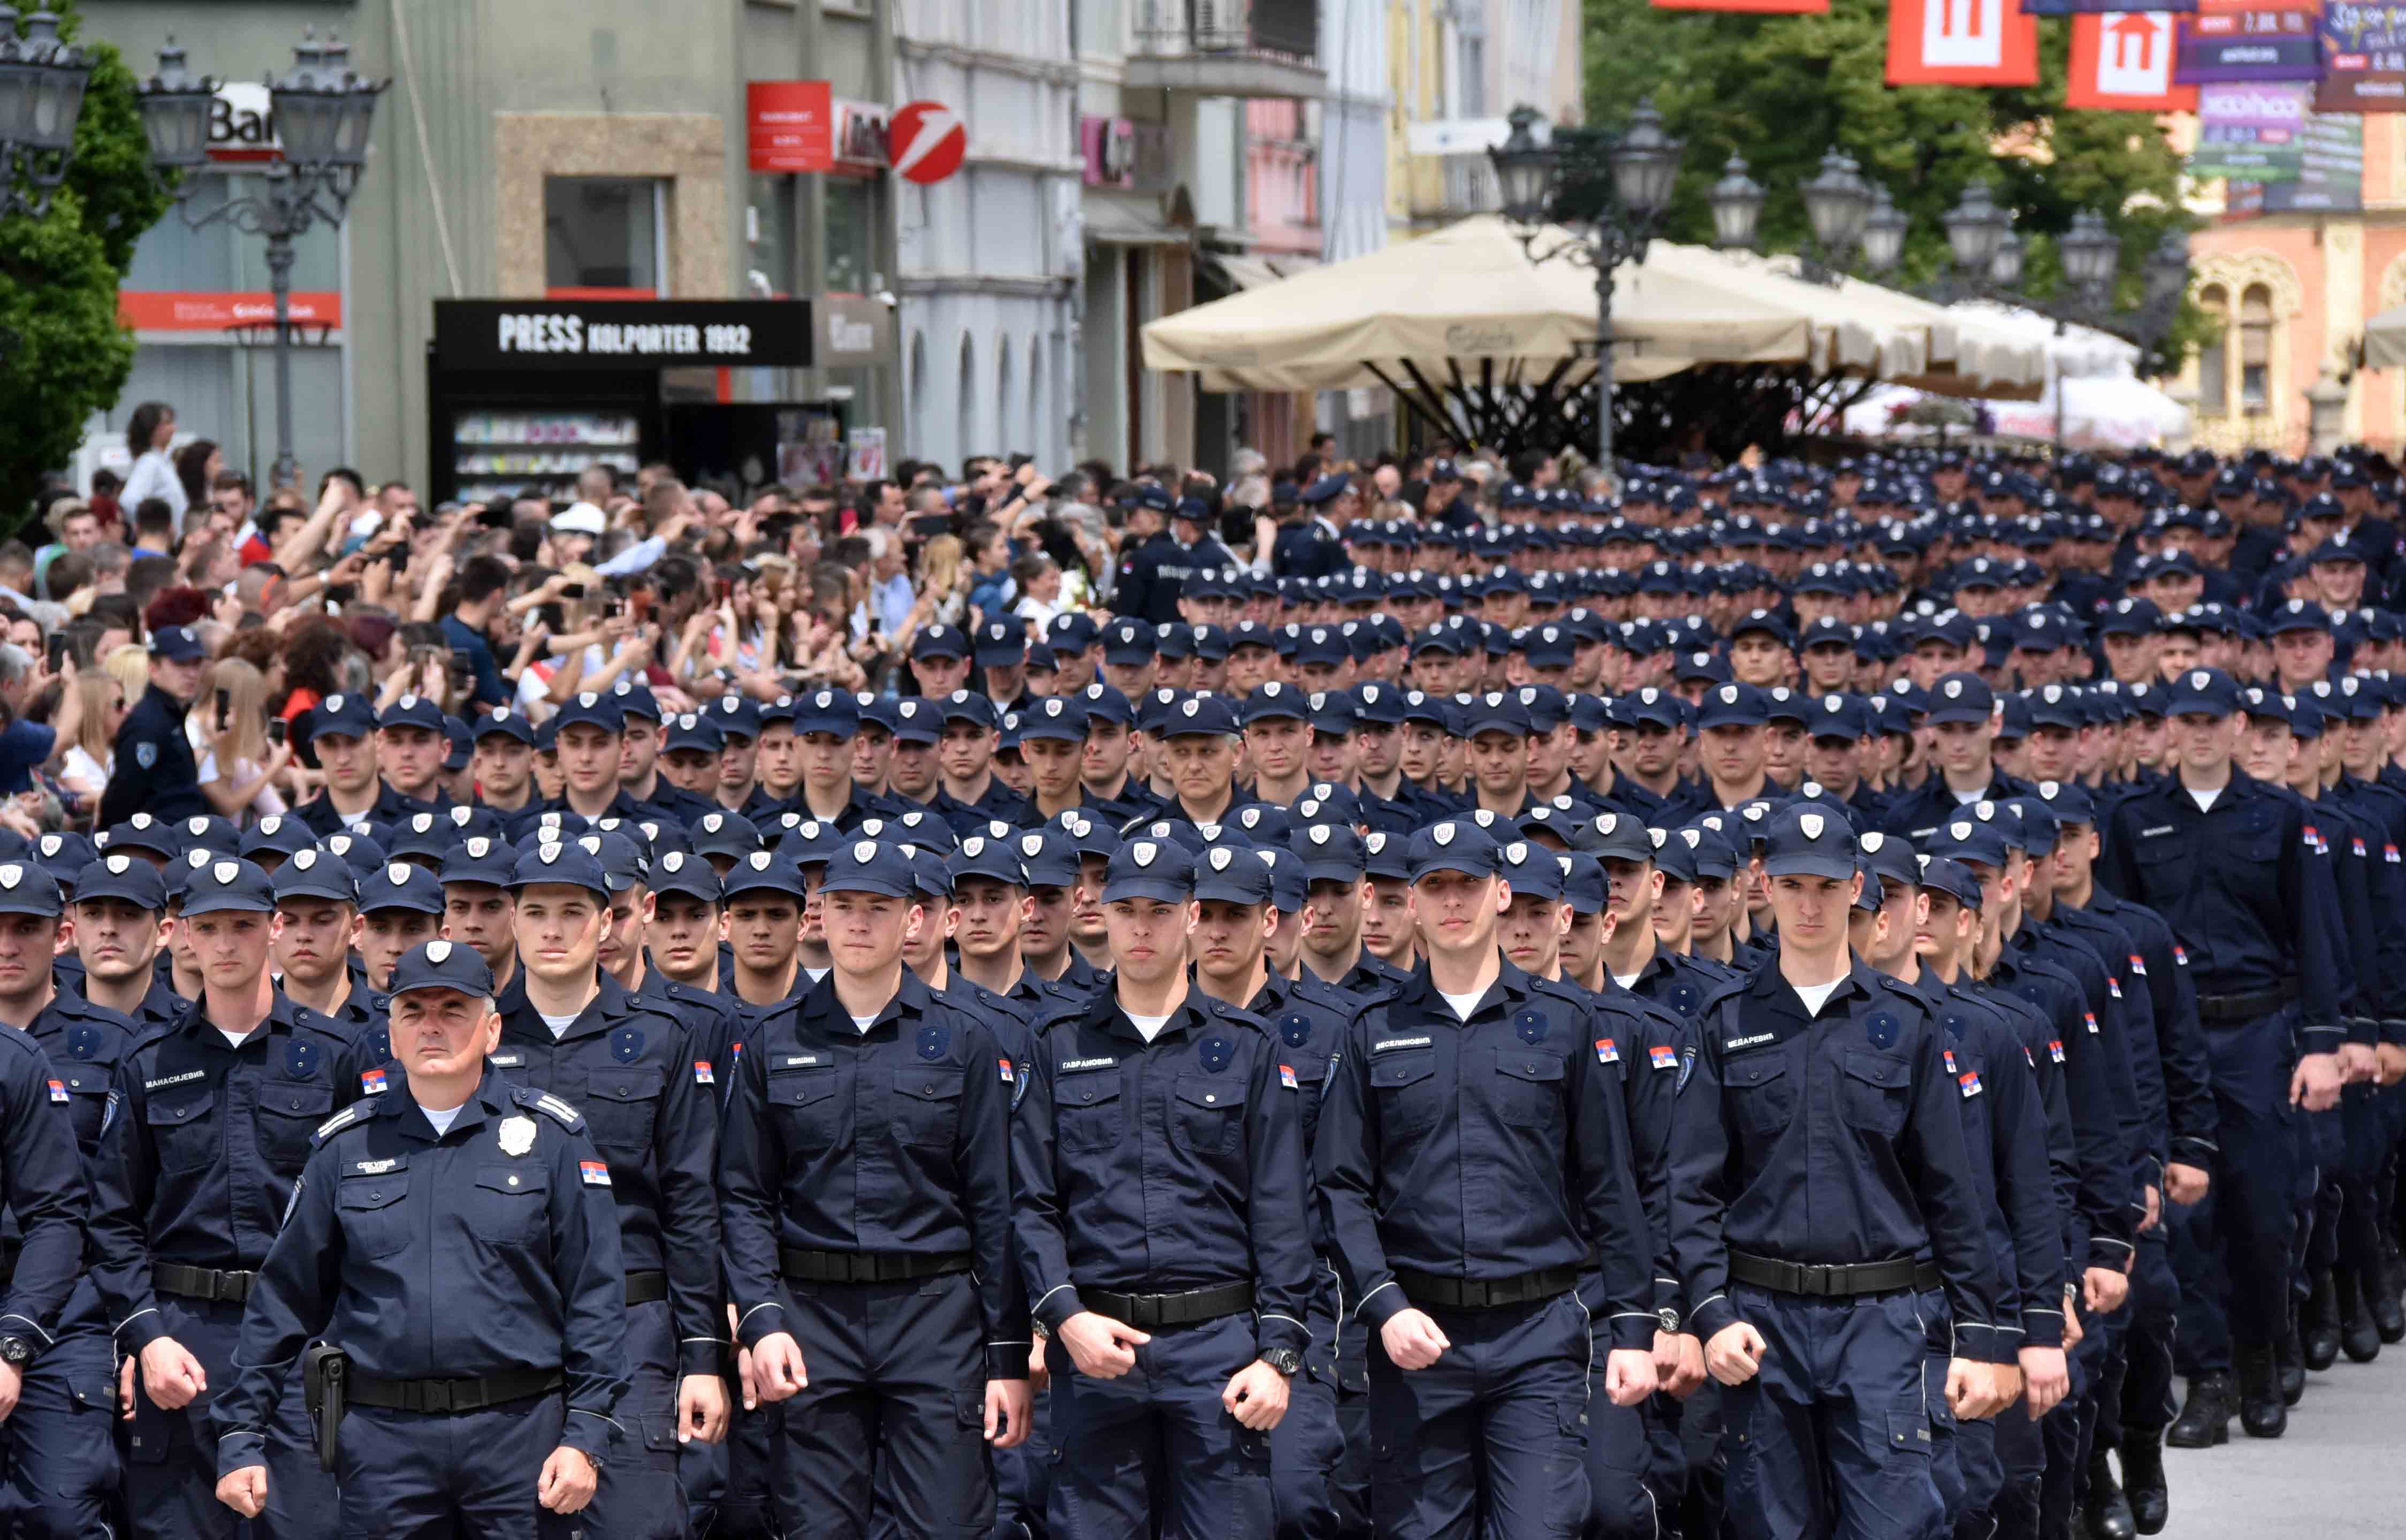 Održana Svečana promocija 711 novih policajaca i vatrogasaca, diplomiranih studenata KPU u Novom Sadu